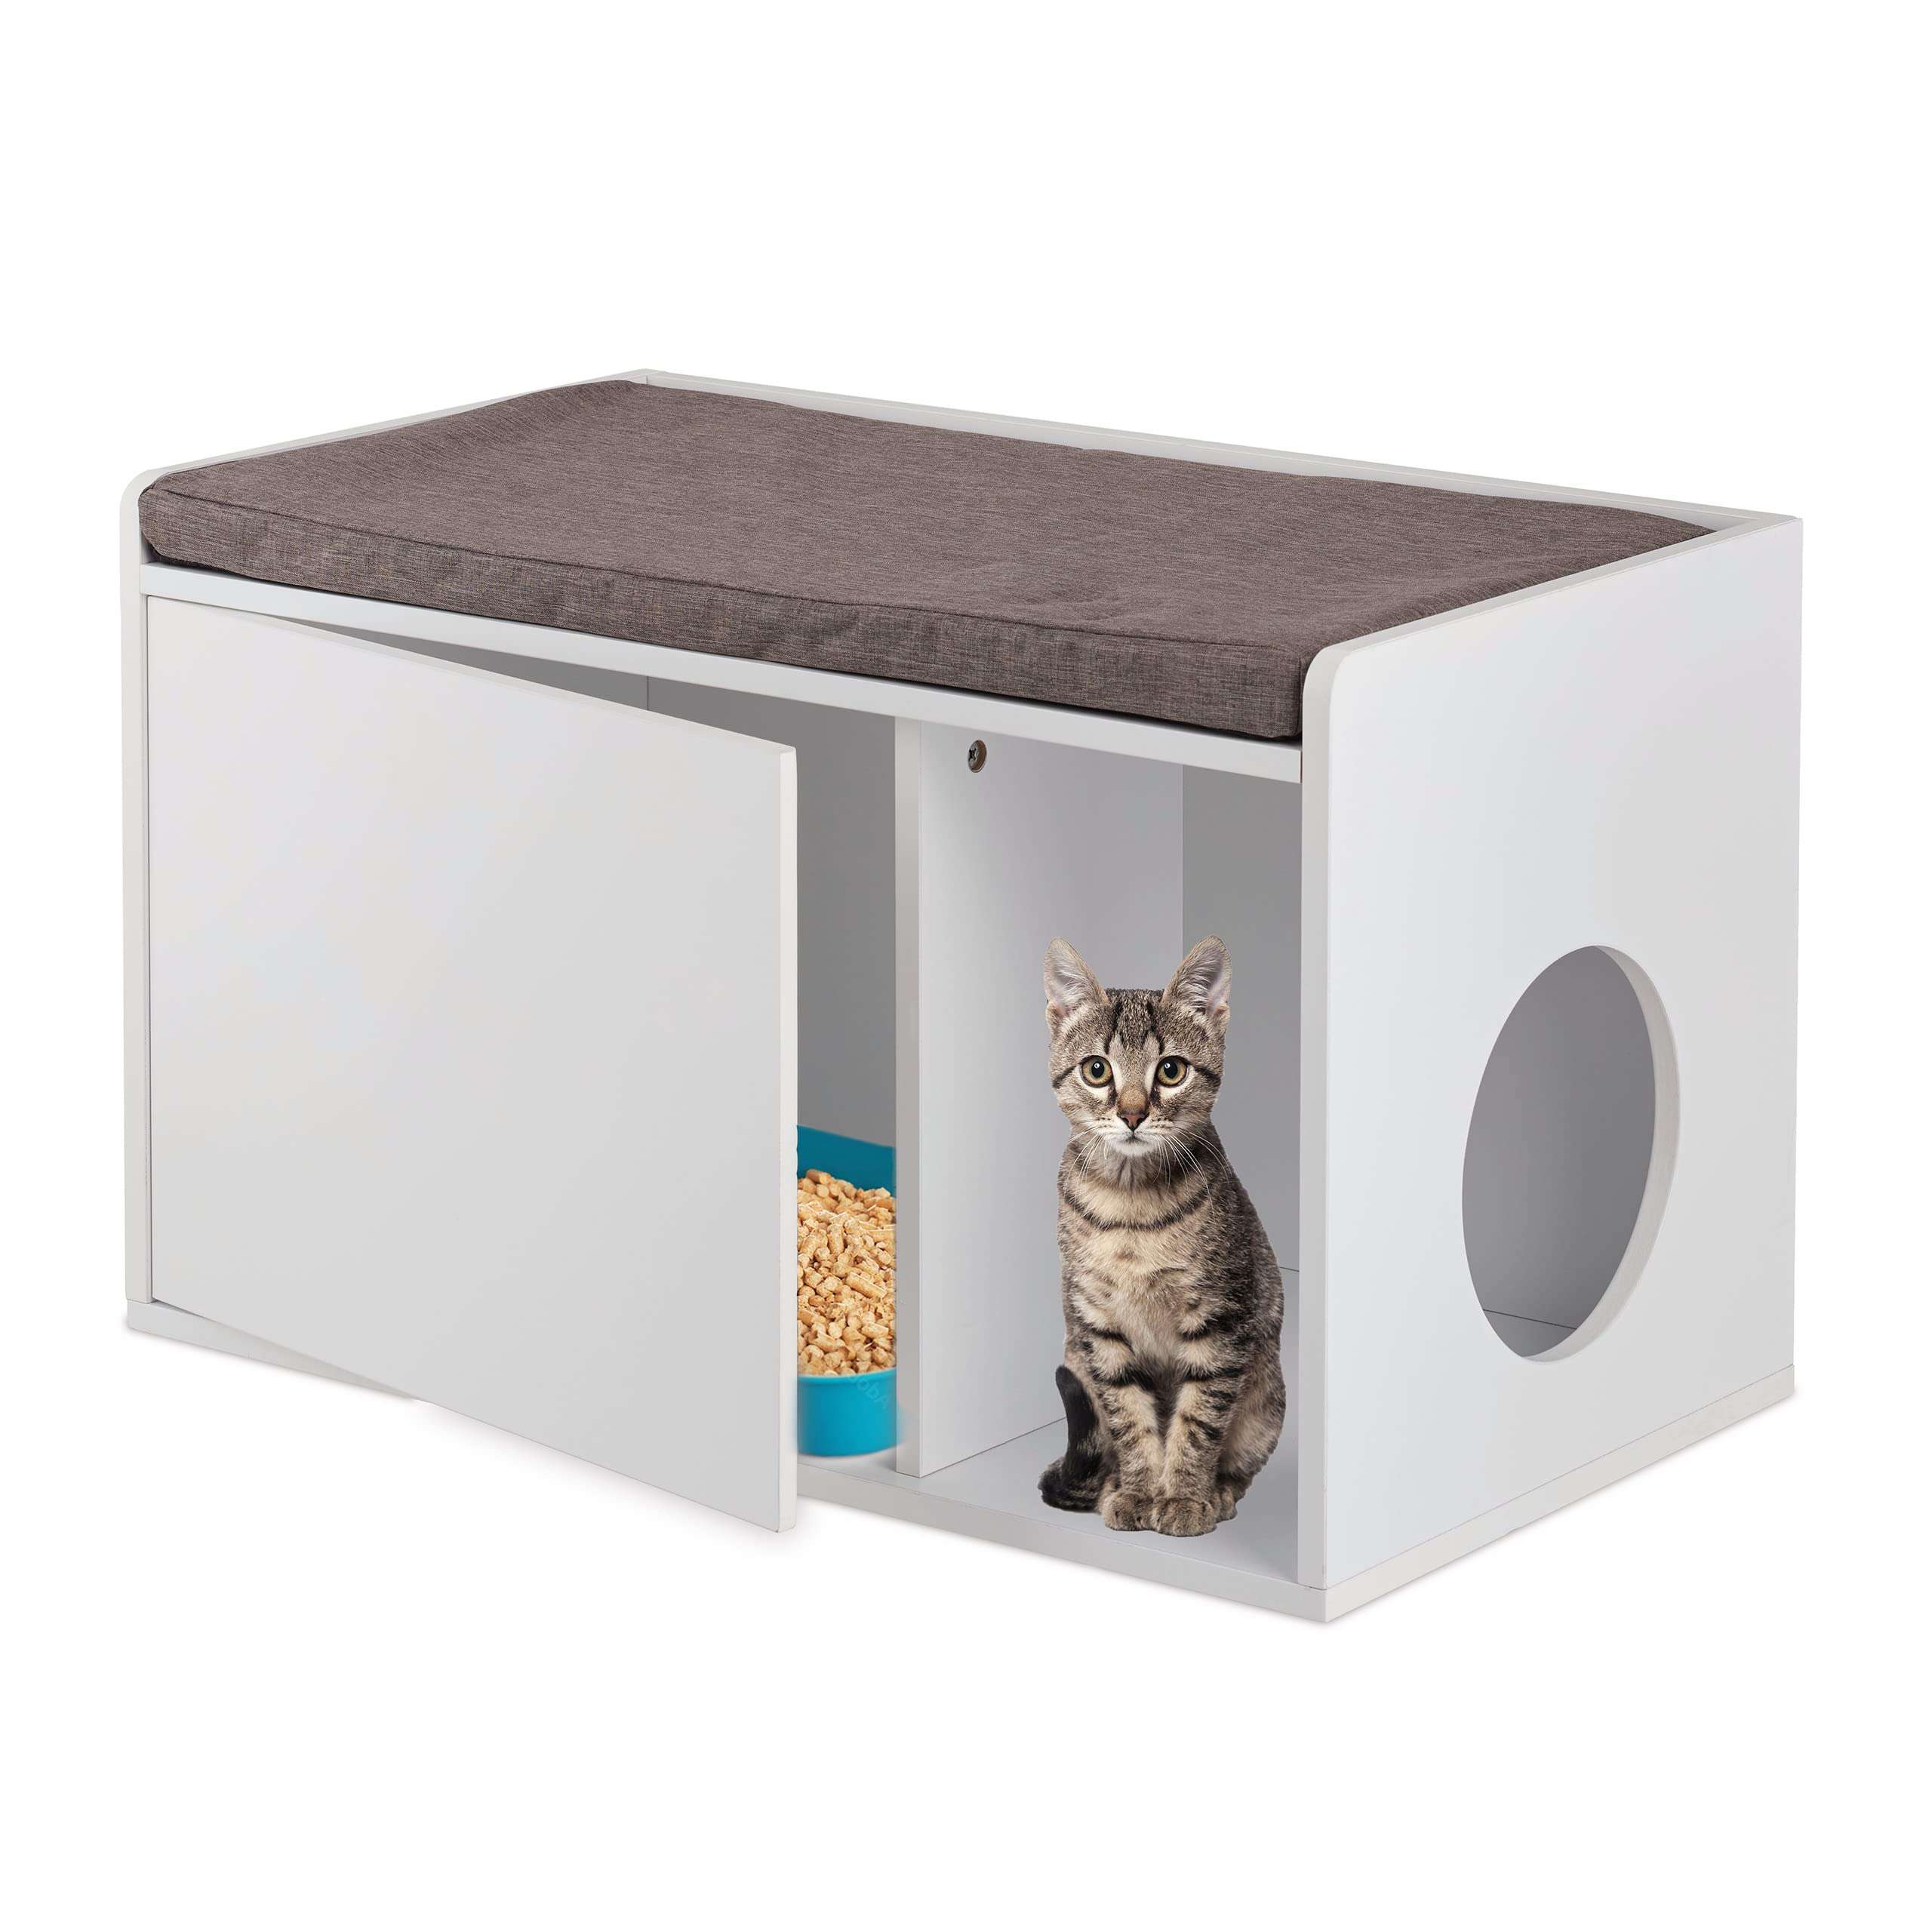 Relaxdays Katzenschrank mit Sitzauflage, 2in1 Katzenkommode & Sitzbank, HBT: 45,5 x 75 x 43 cm, für Katzenklo, weiß/grau